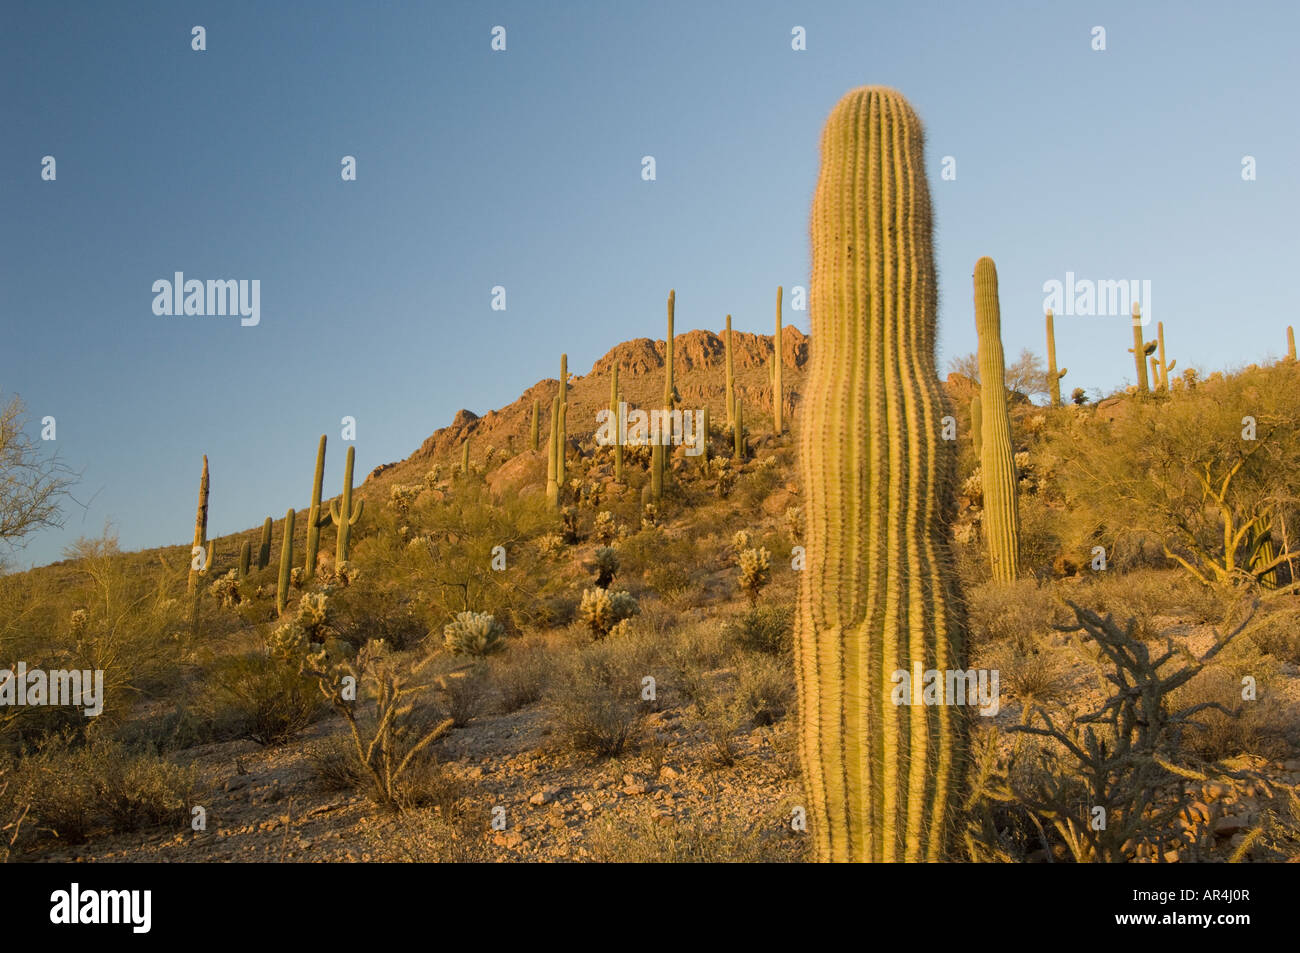 Cactus landscape at sunset, Arizona Sonora desert, United States USA Stock Photo